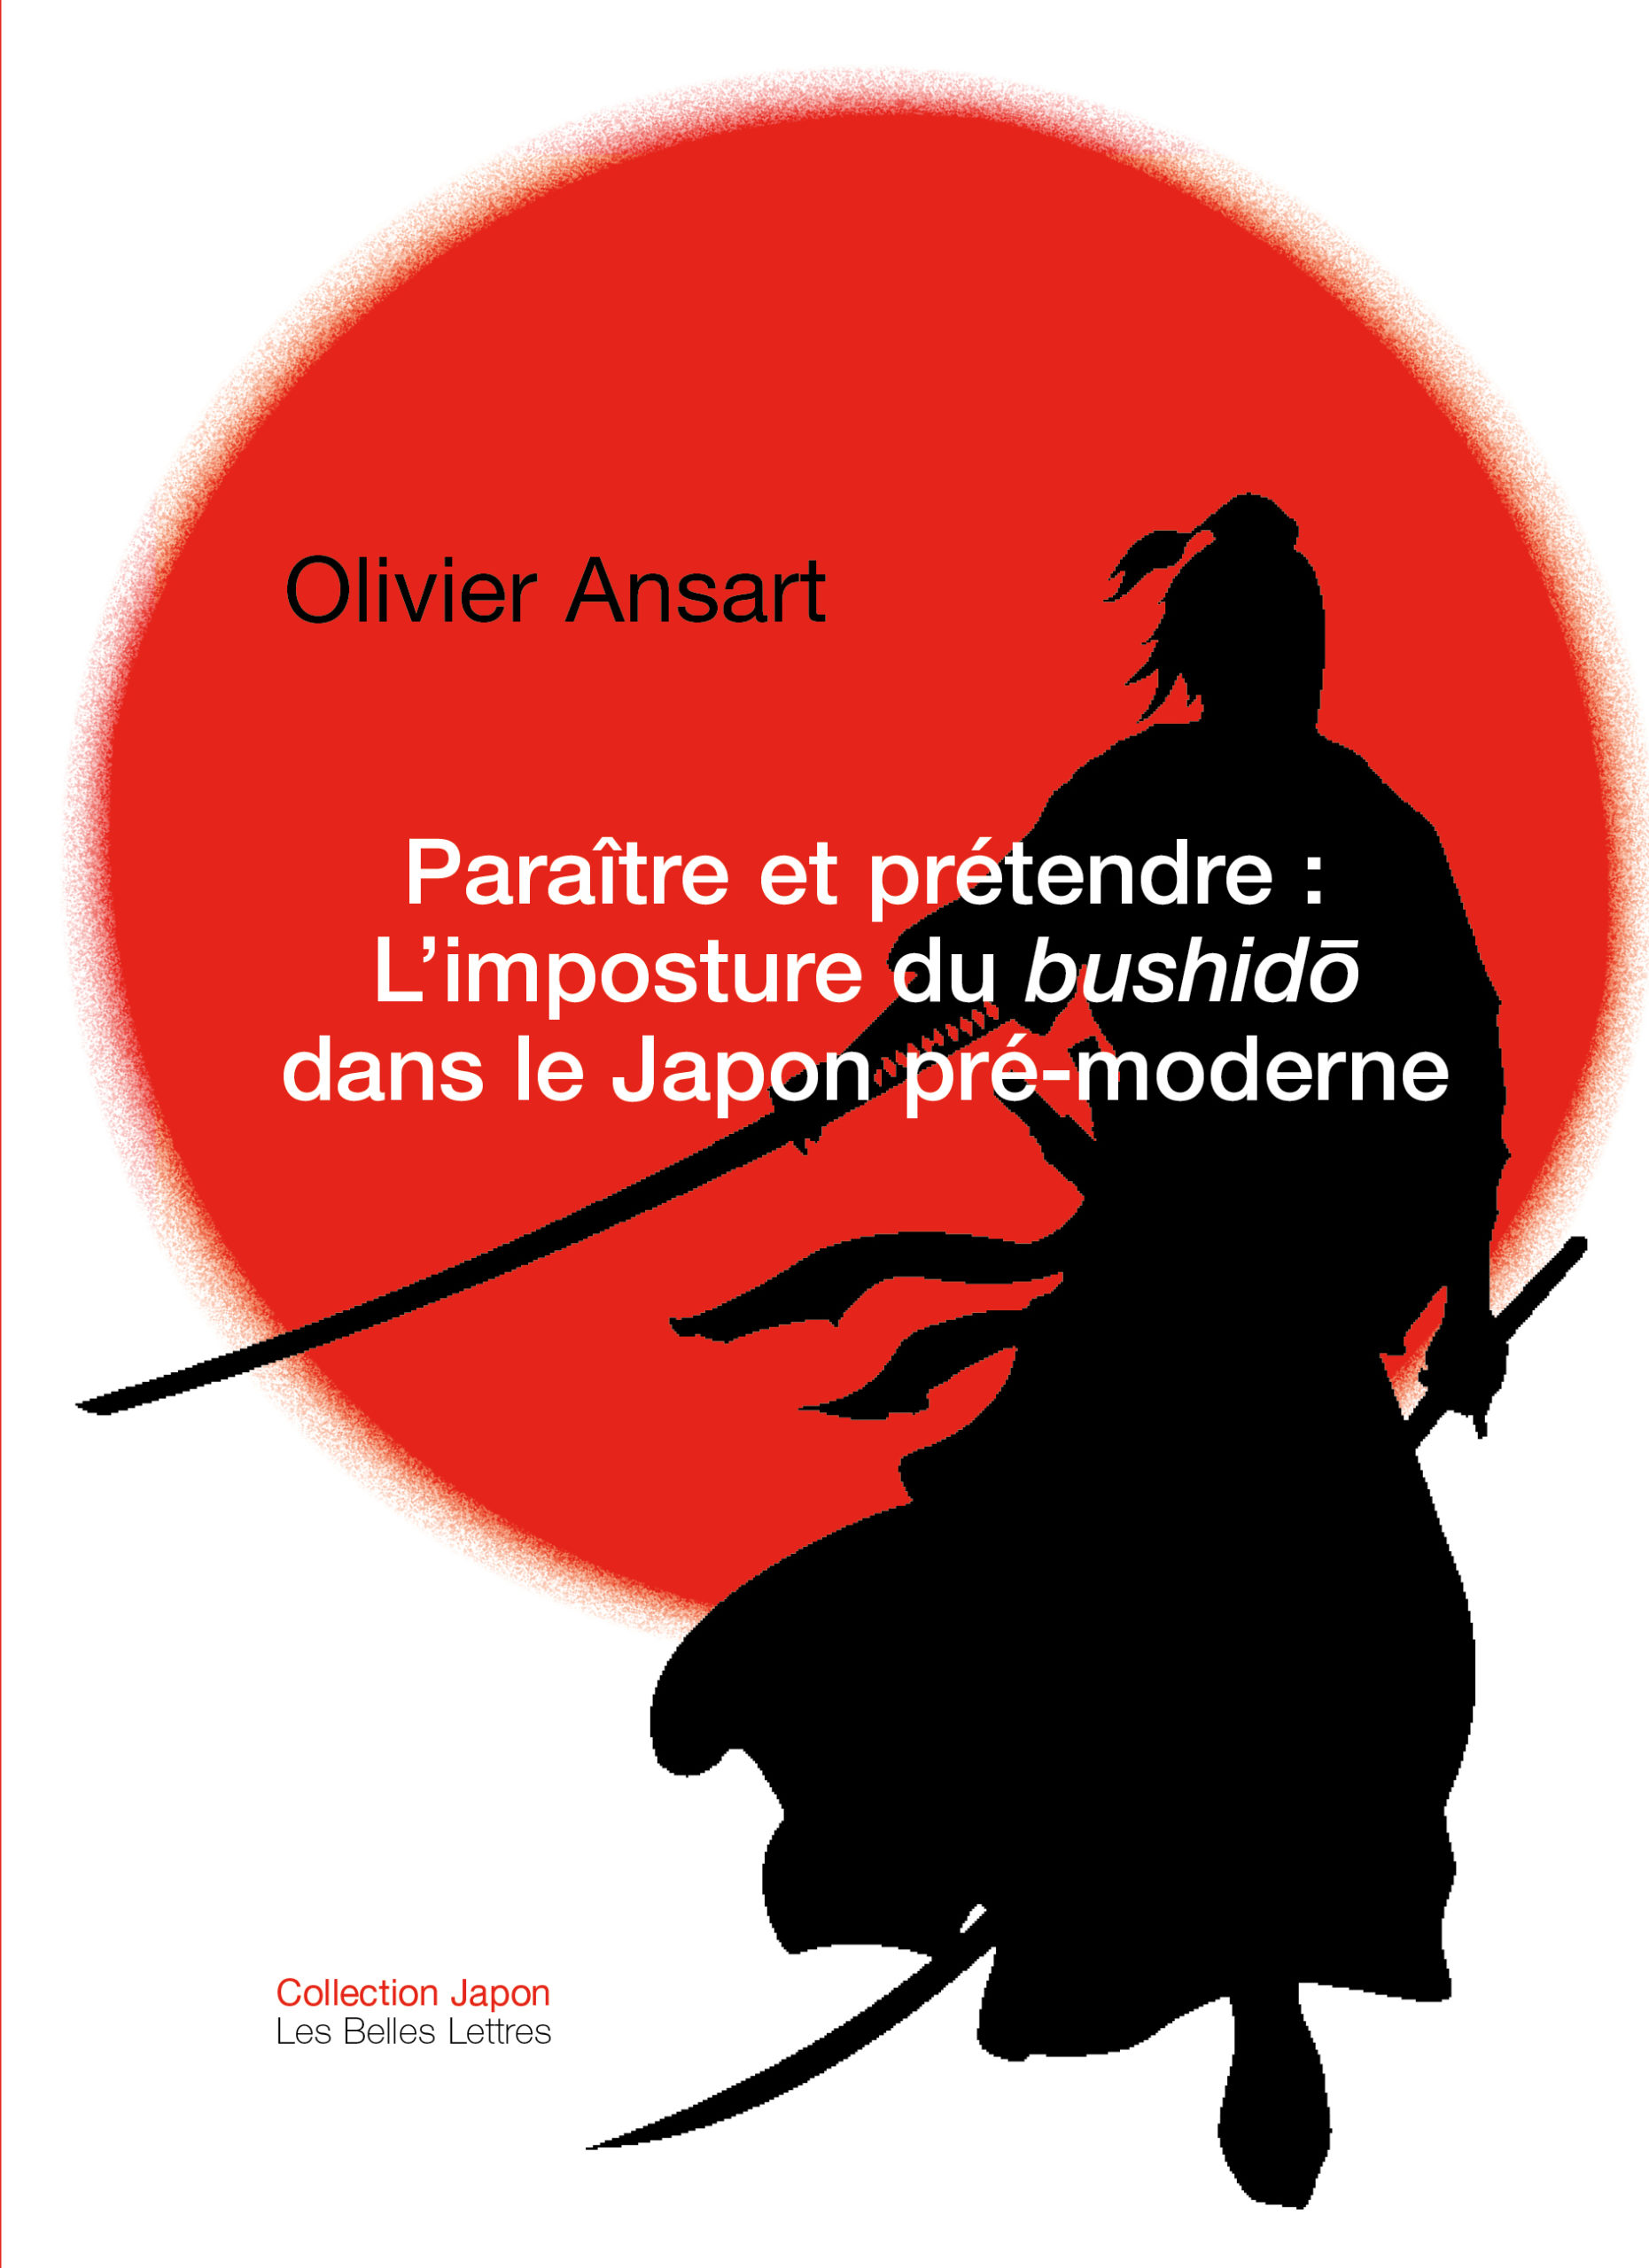 Paraître et prétendre : L’imposture du Bushidō dans le Japon pré-moderne d’Olivier Ansart paraît aux éditions des Belles Lettres.